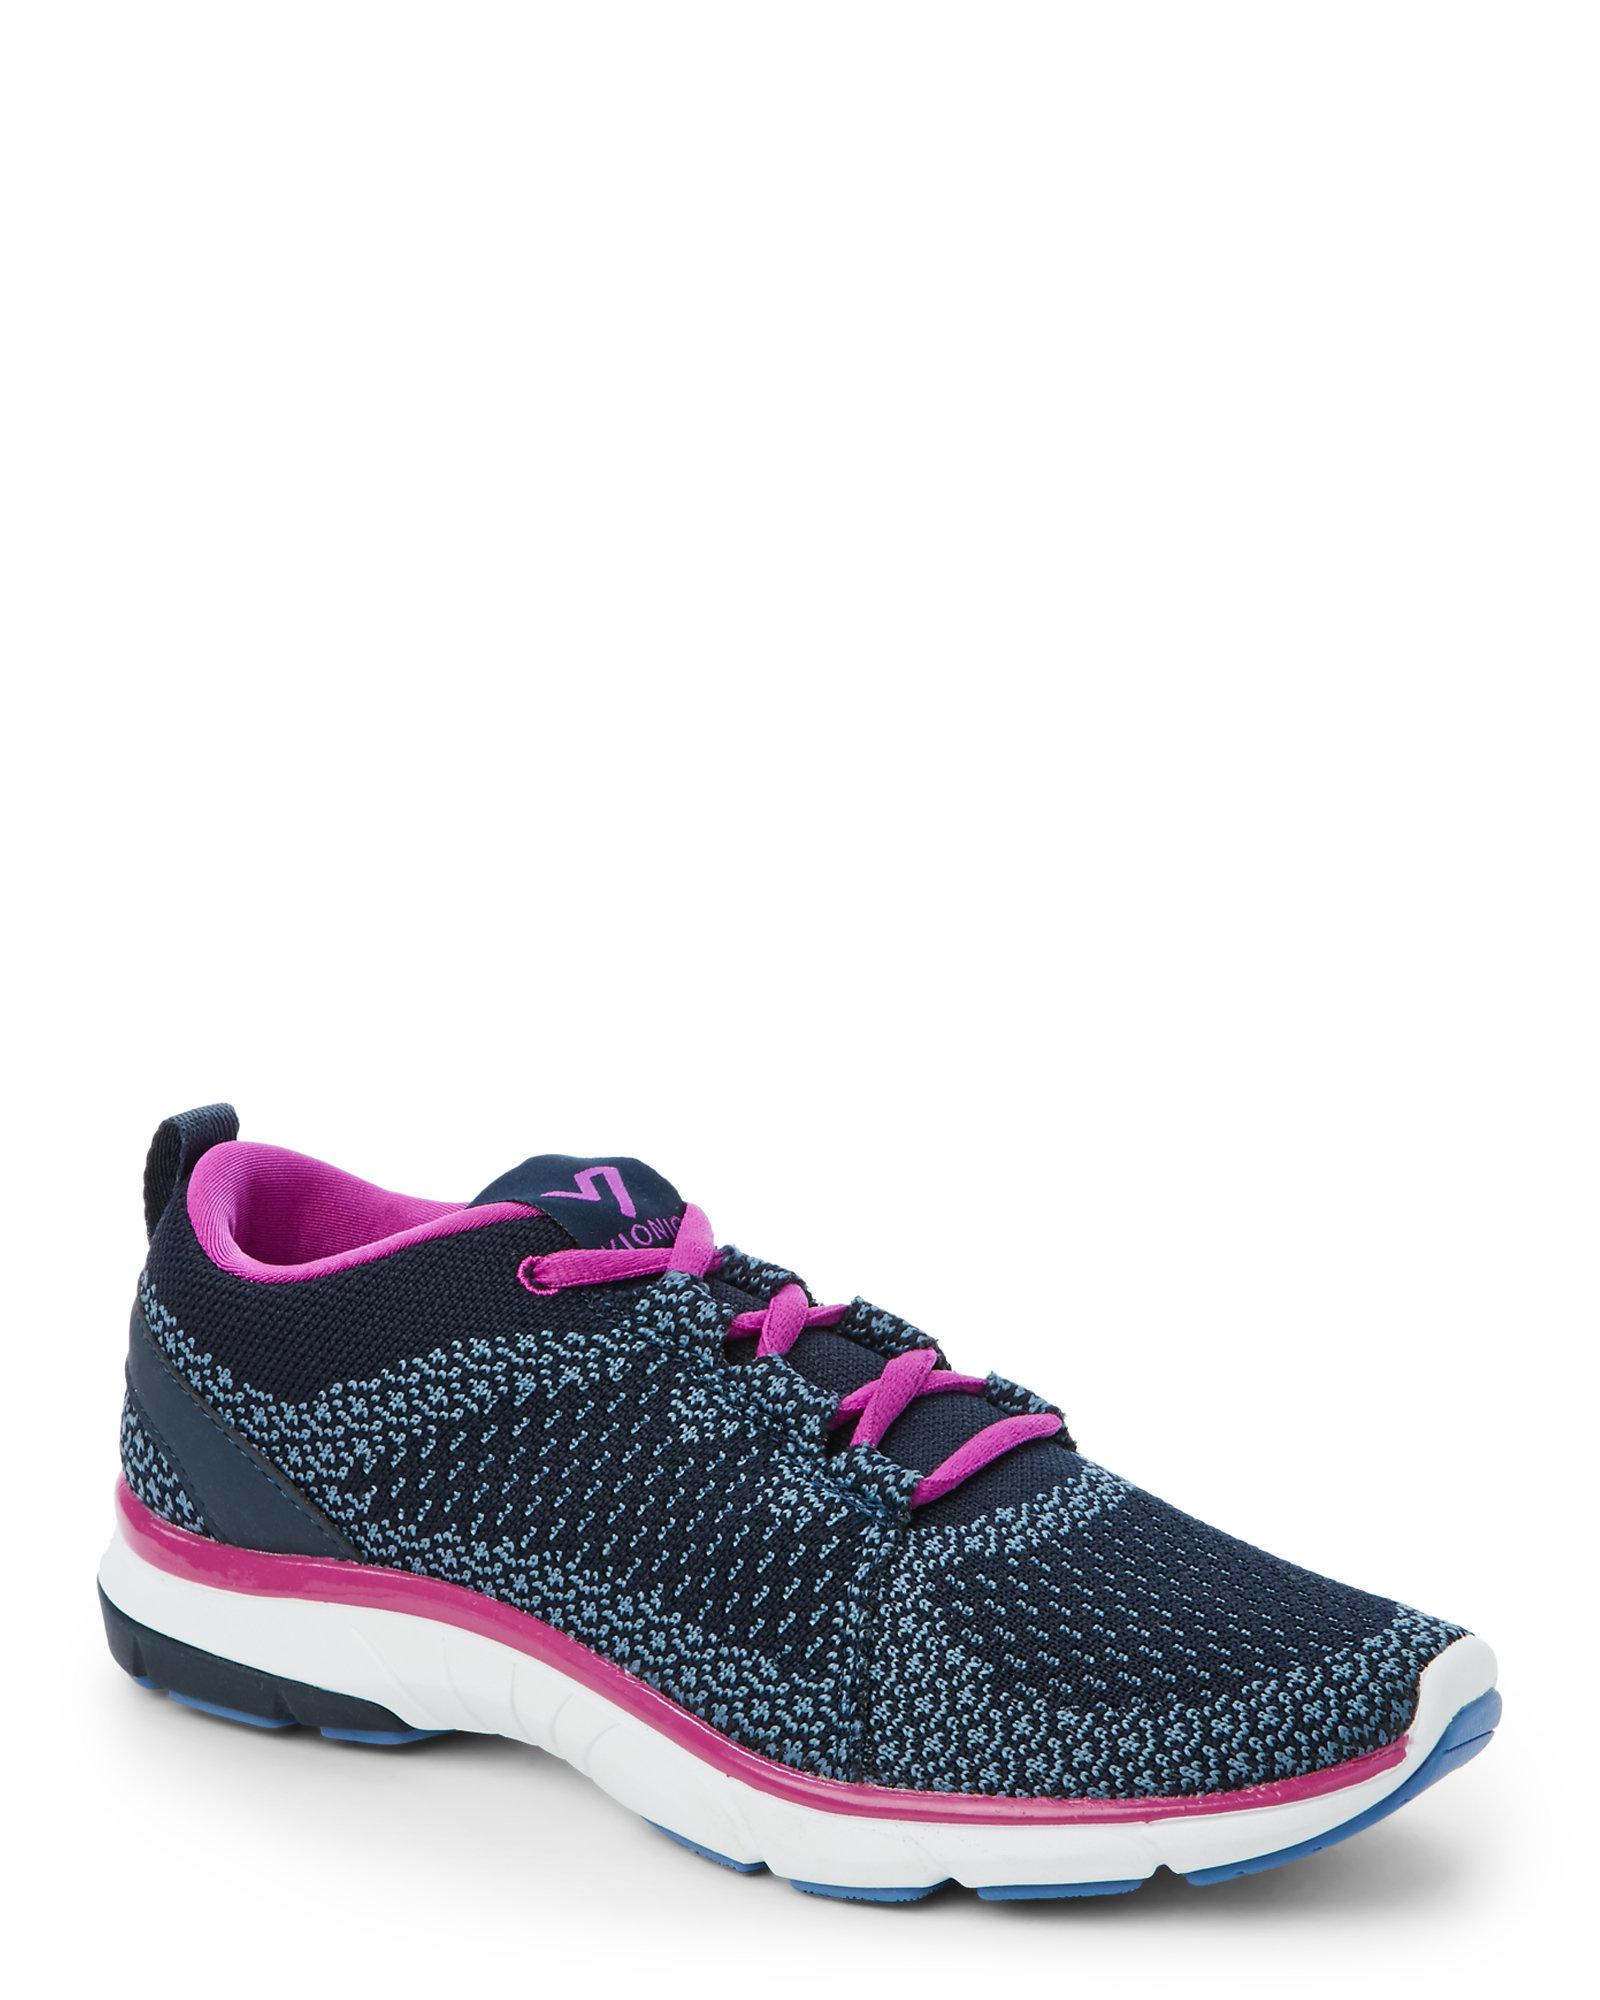 Vionic Lace Flex Sierra Women's Shoes (trainers) In Blue - Lyst